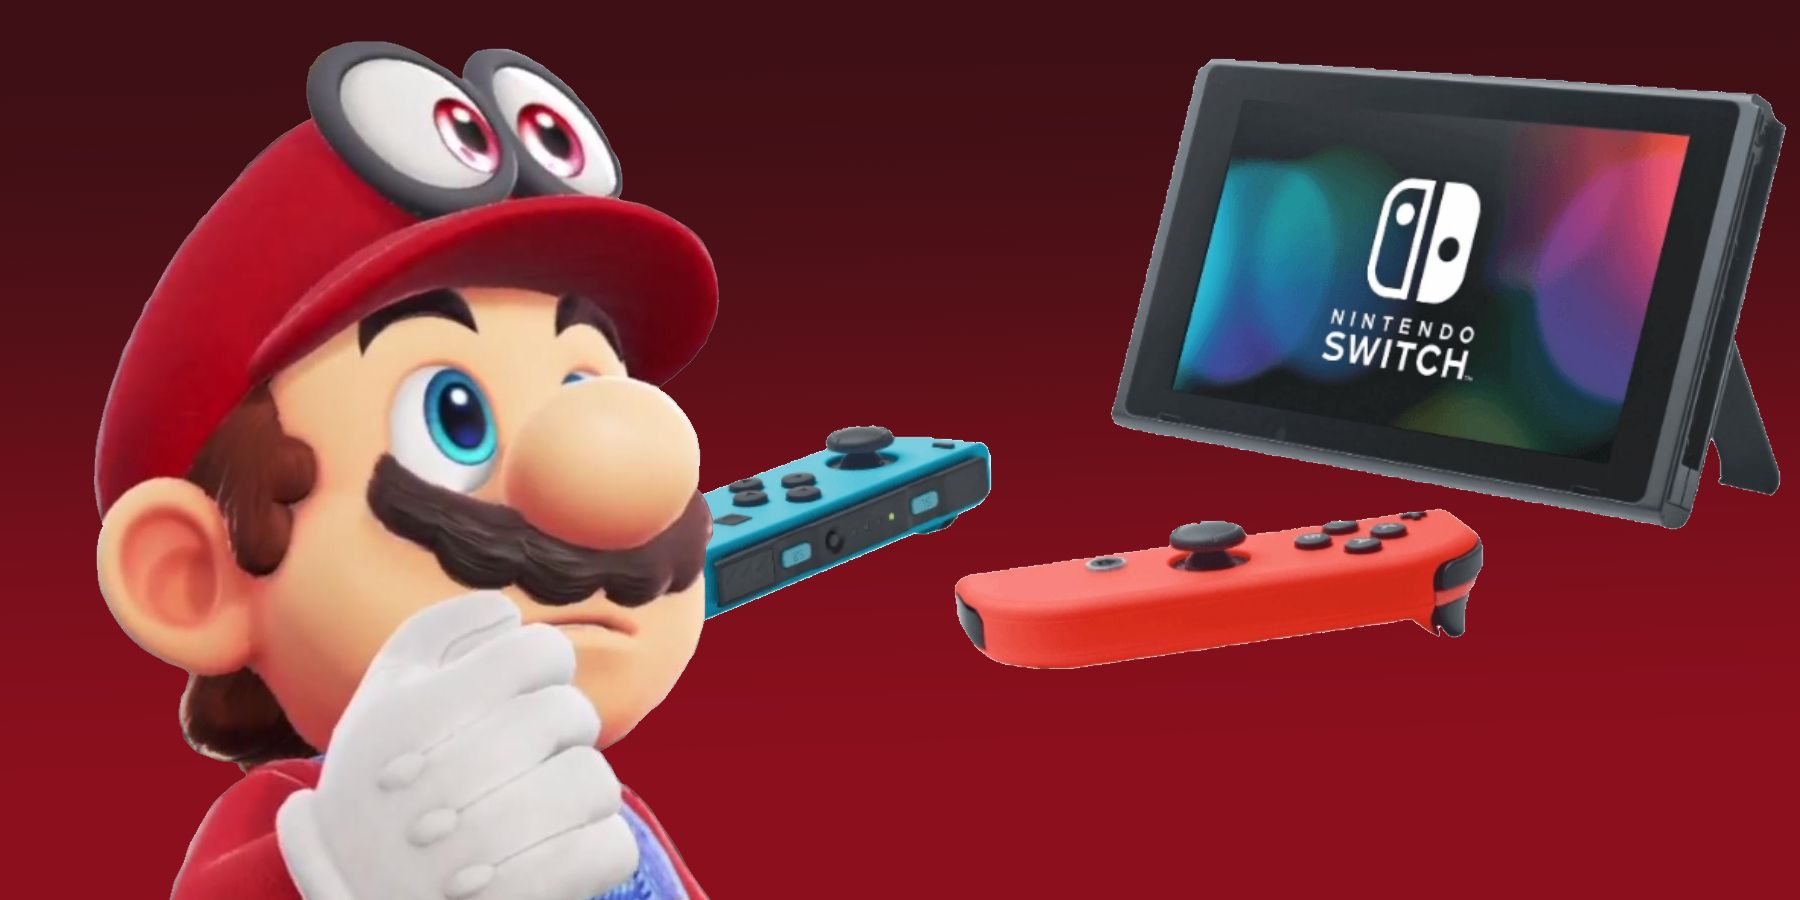 Οι θαυμαστές της Nintendo μπορεί να θέλουν να σταματήσουν την αγορά του διακόπτη OLED